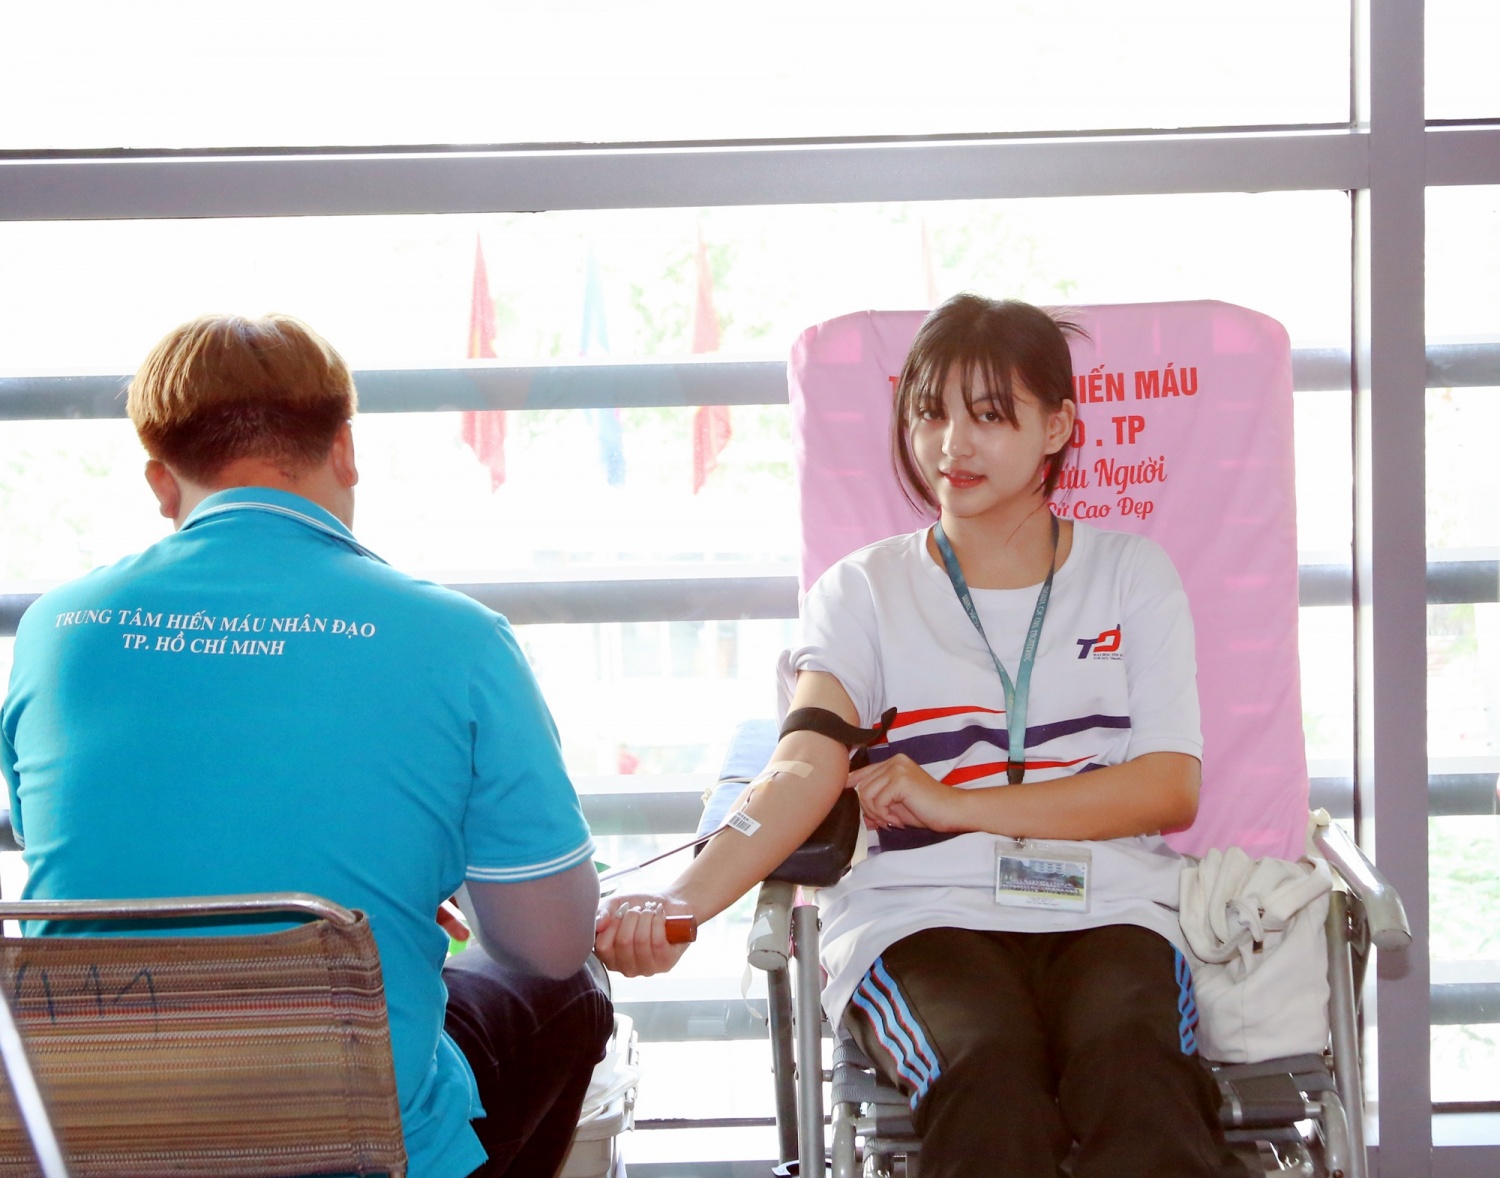 Petrovietnam phát động chương trình hiến máu nhân đạo: 